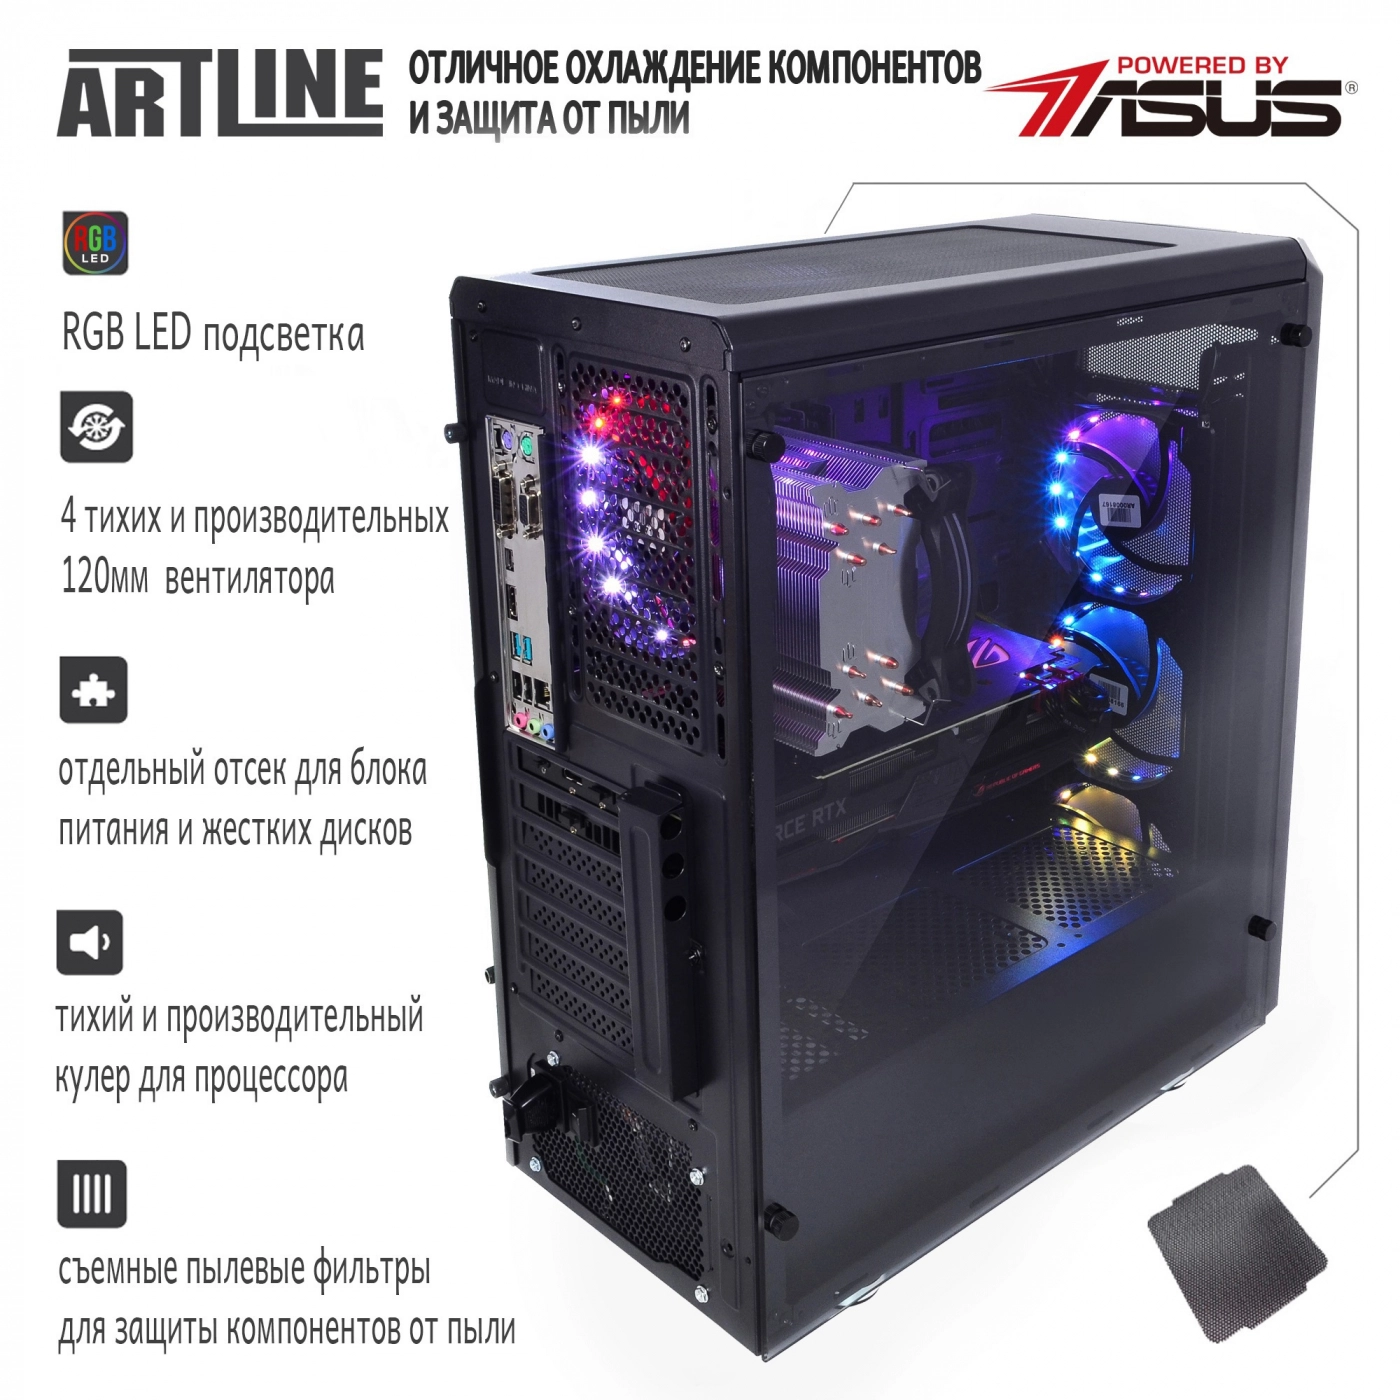 Купить Компьютер ARTLINE Gaming X97v17 - фото 4